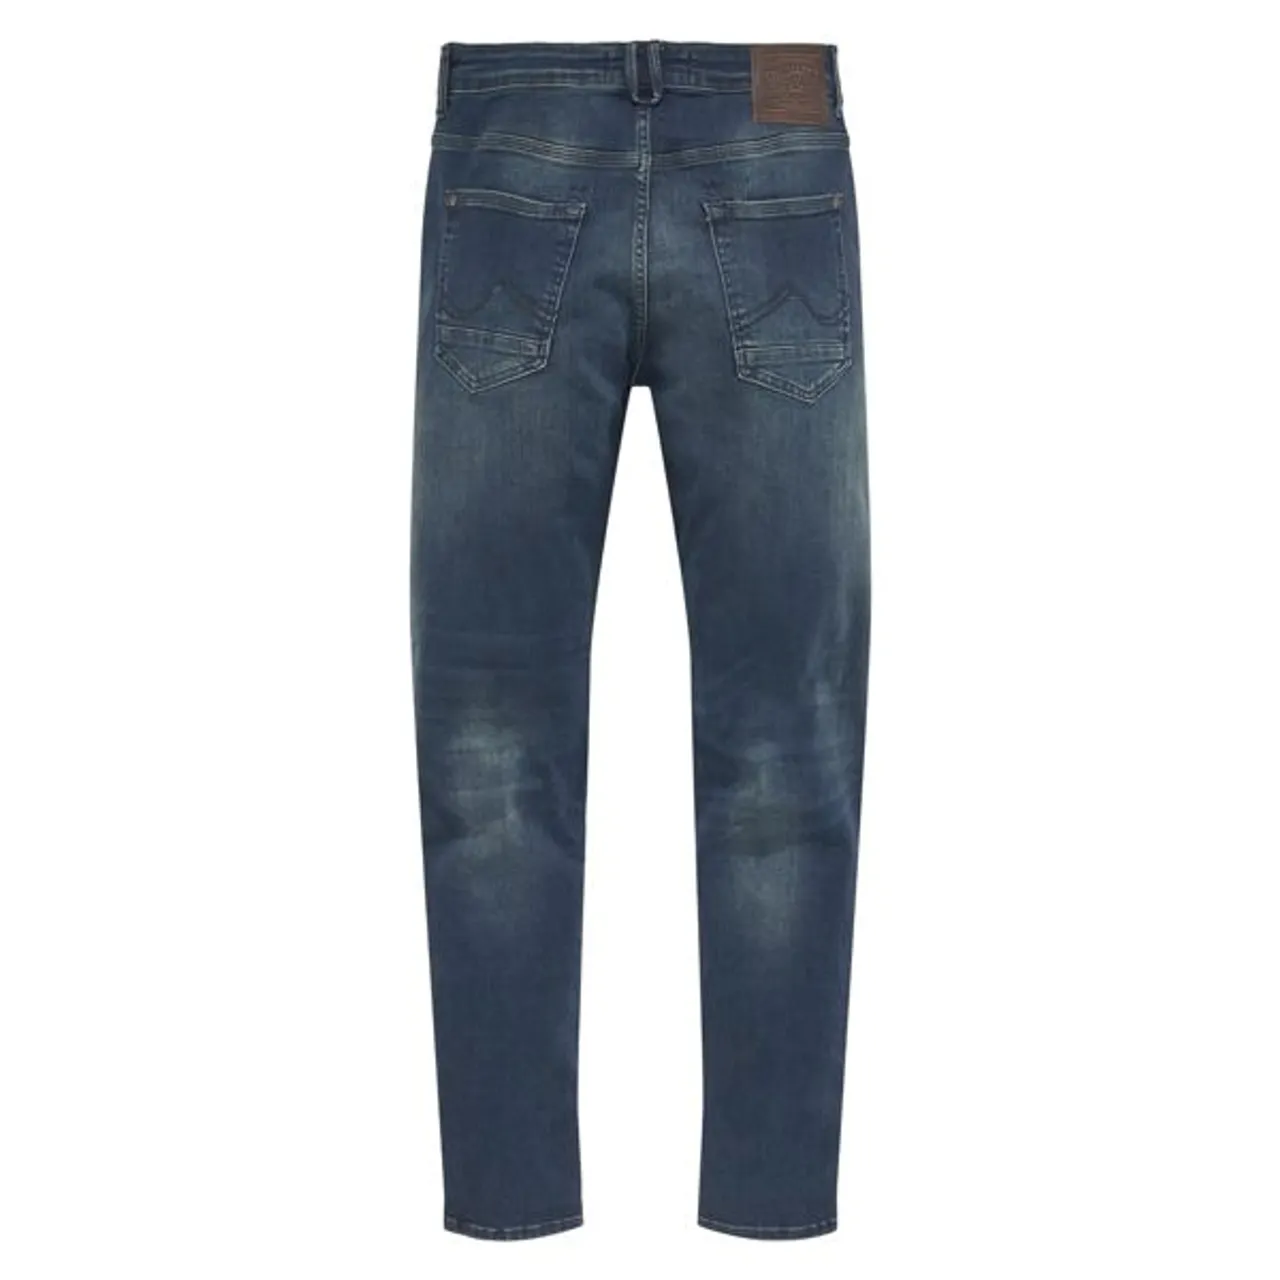 Slim-fit-Jeans PETROL INDUSTRIES "Seaham" Gr. 32, Länge 34, blau (dark, coated) Herren Jeans Slim Fit